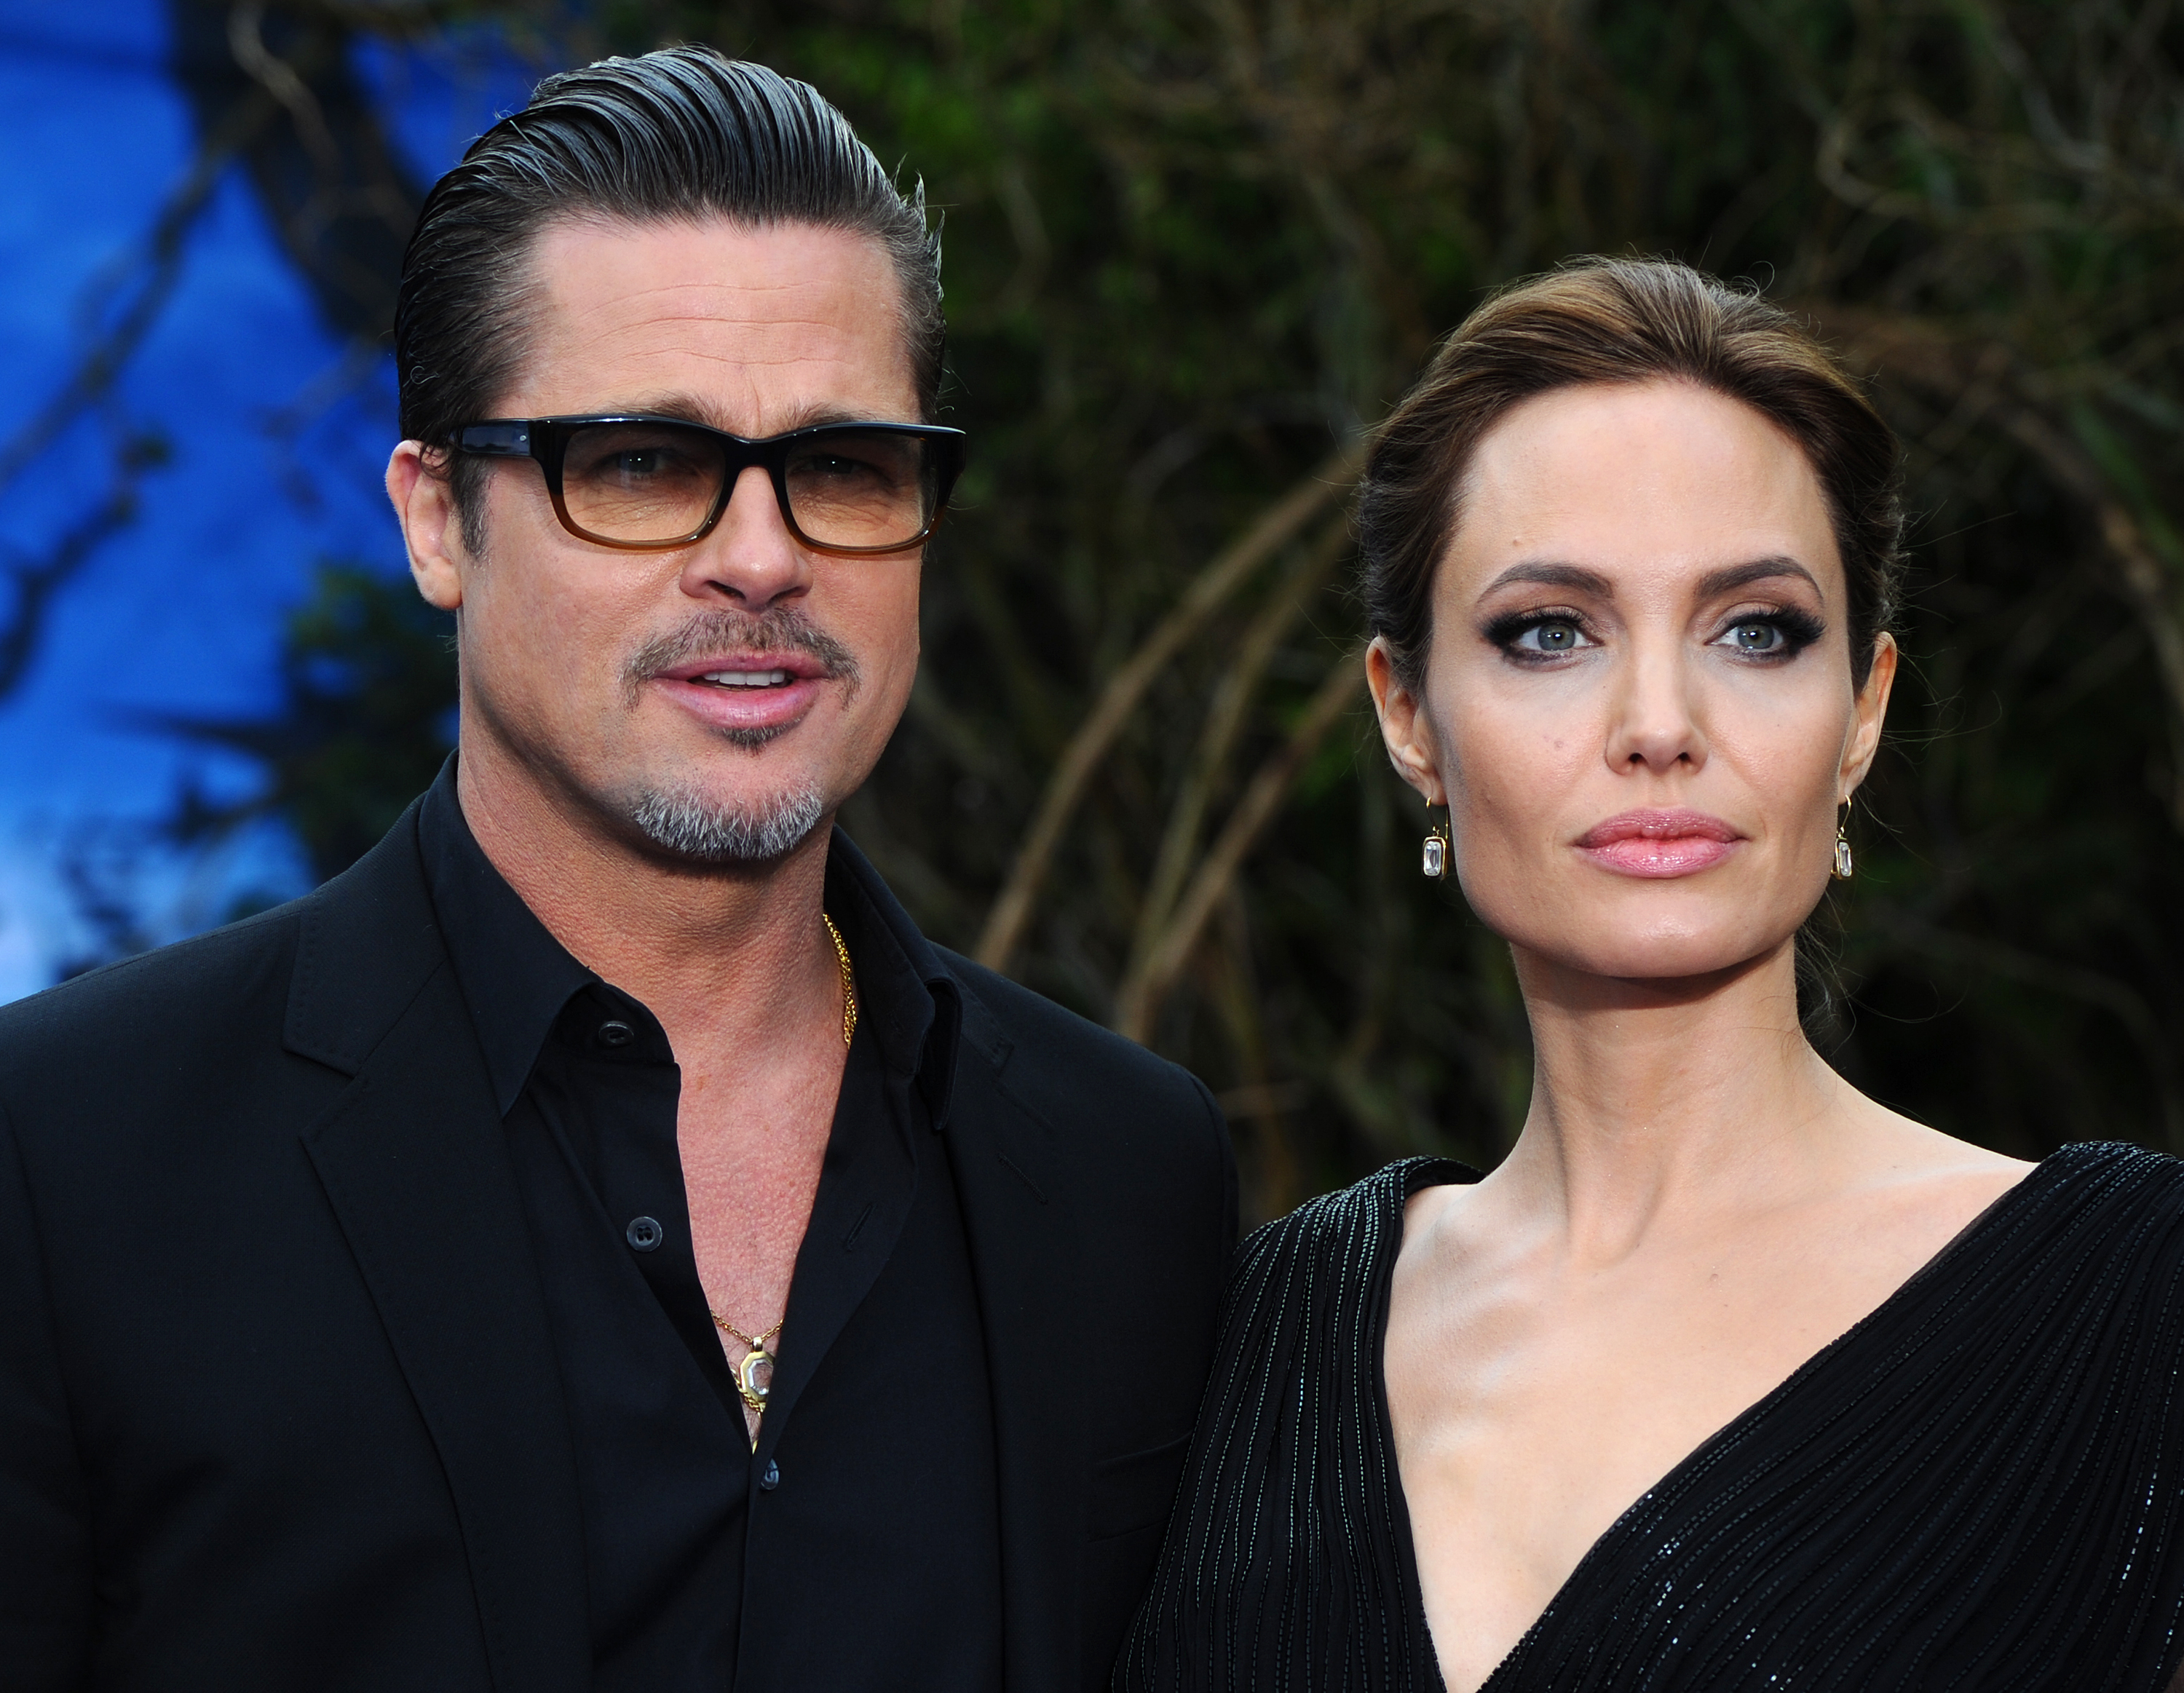 E-mail emocionado de Angelina Jolie para Brad Pitt resurge em meio à  batalha judicial: Você realmente queria que eu fosse embora - Hugo Gloss